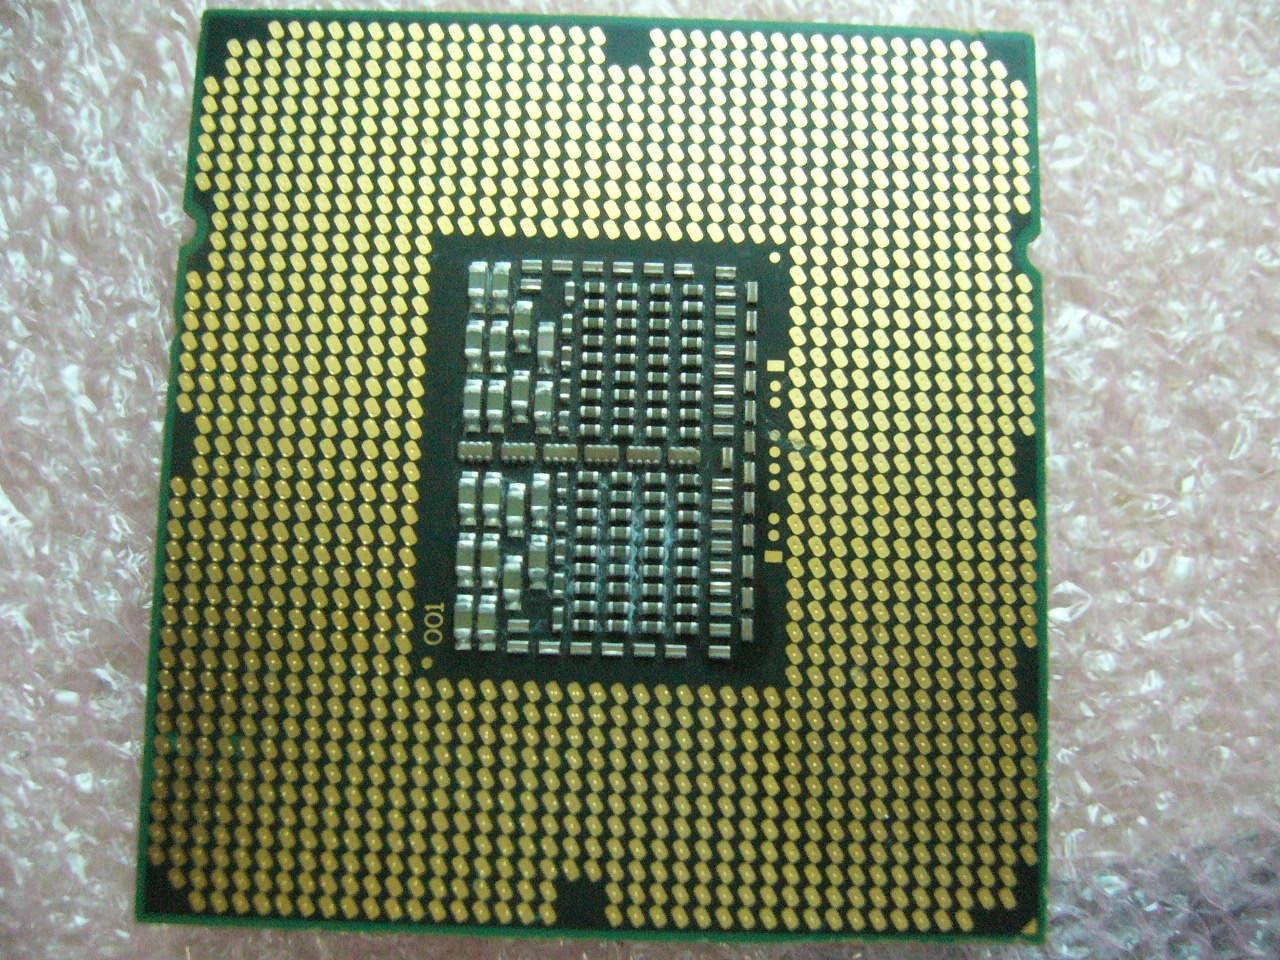 QTY 1x INTEL Quad-Cores CPU E5506 2.14GHZ/4MB 4.80T/s QPI LGA1366 SLBF8 - Click Image to Close